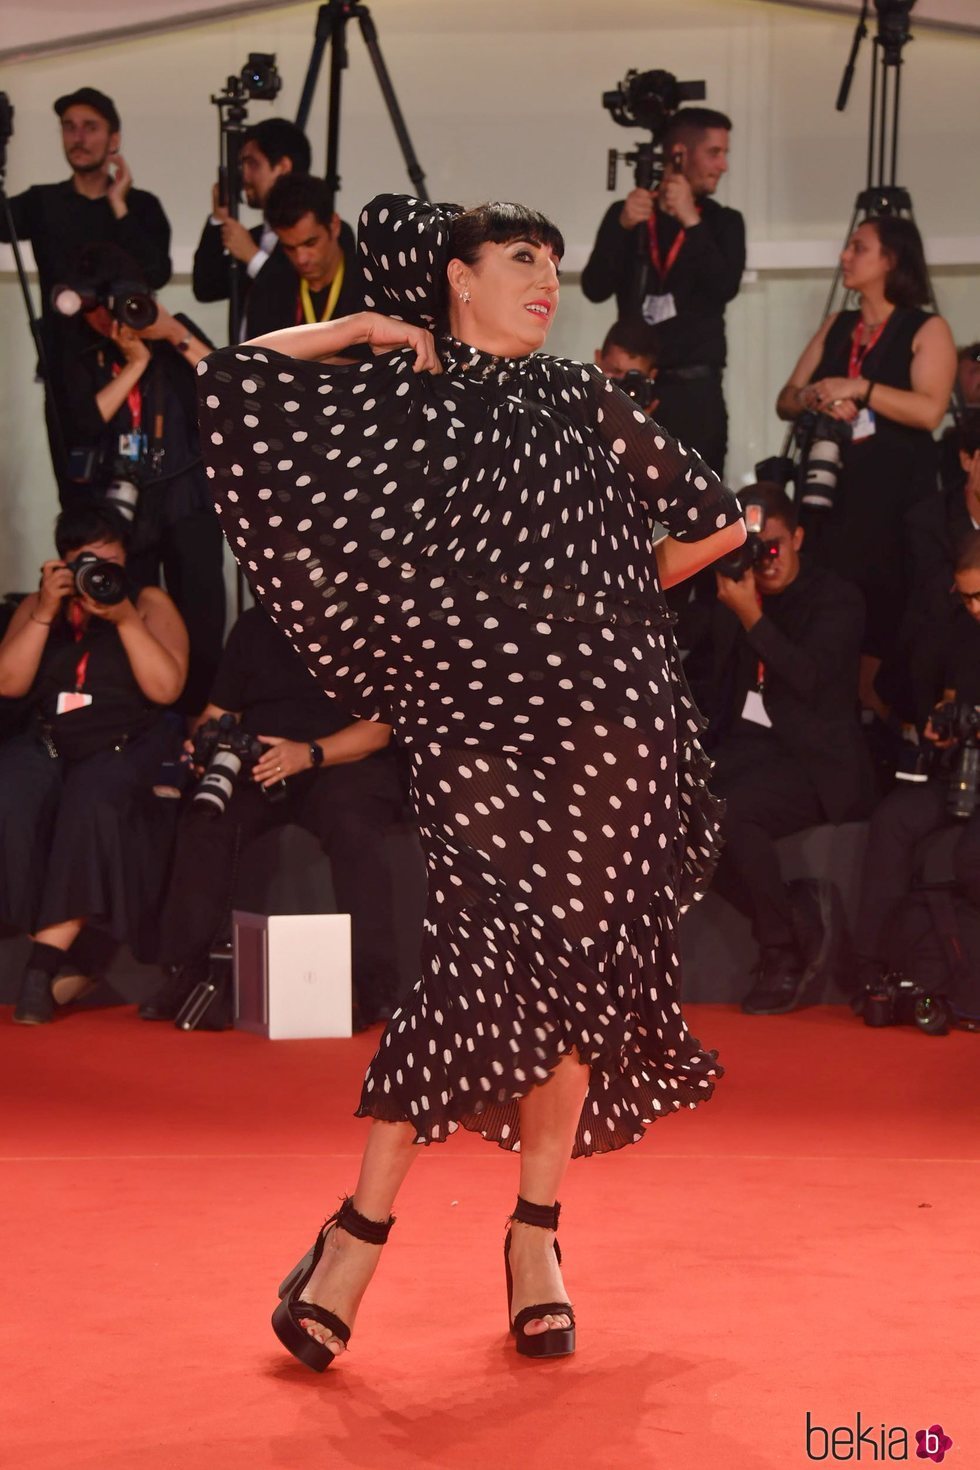 Rossy de Palma vestida de Juana Martín en la premiere de 'La lavandería' en el Festival de Venecia 2019